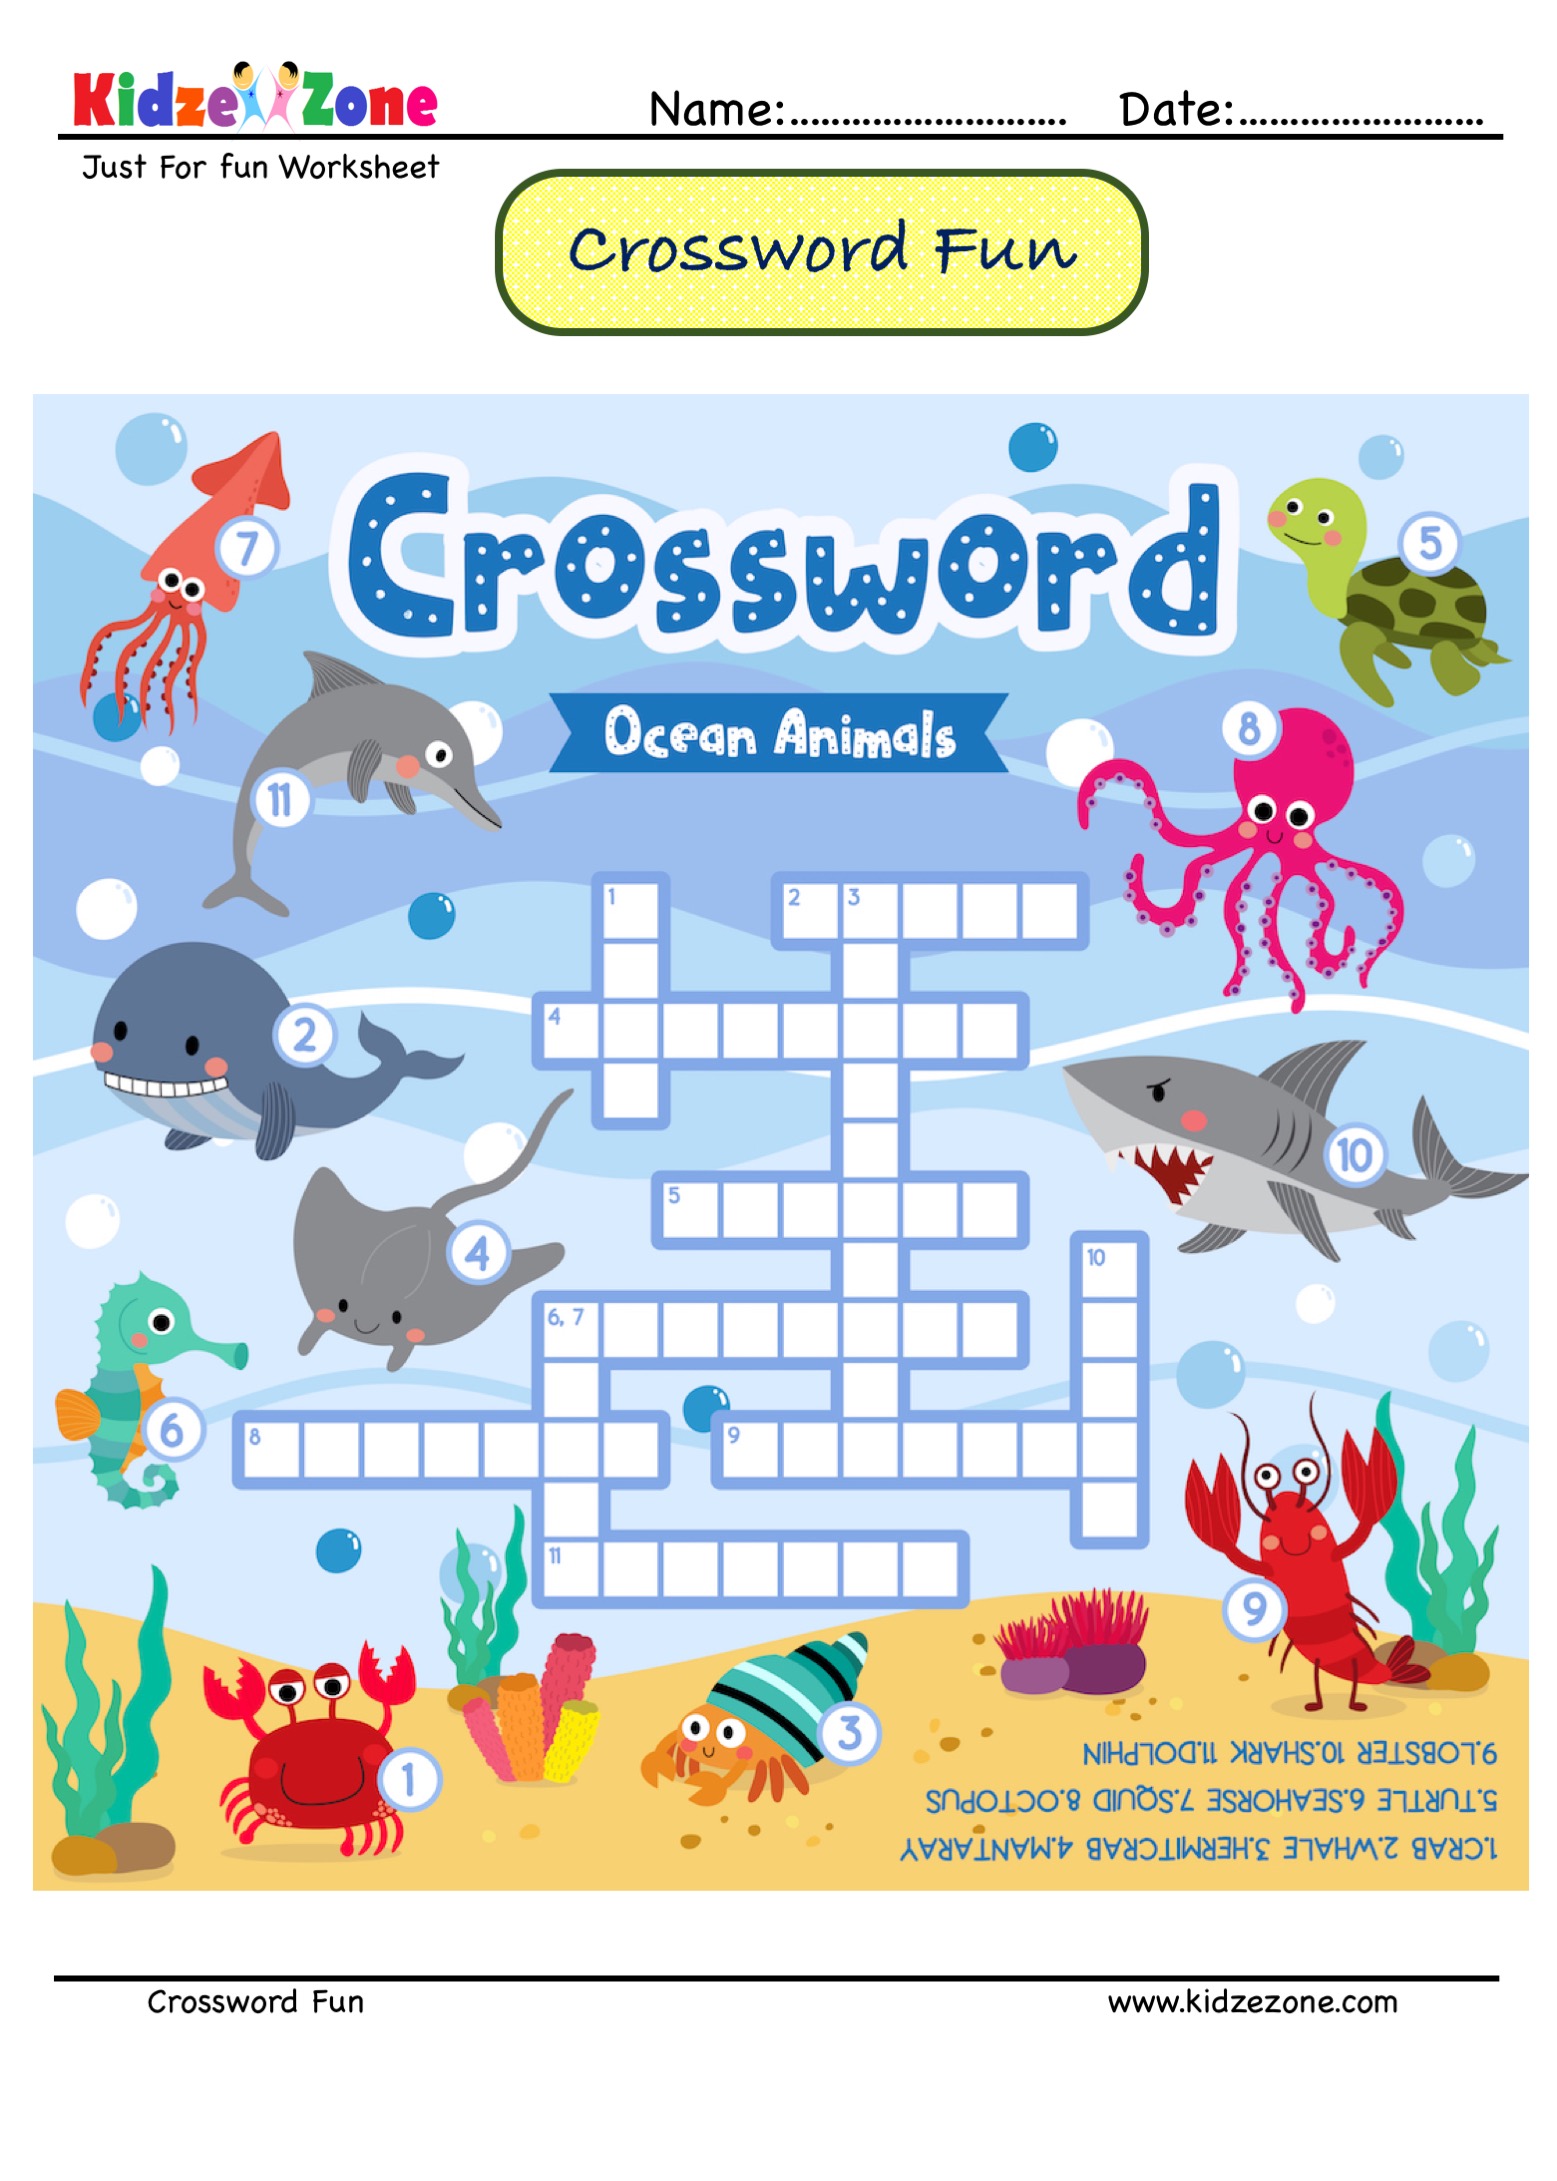 Crossword more. Кроссворд морские обитатели для детей. Морские животные на английском для детей. Кроссворд для детей морские животные. Кроссворды для детей обитатели морей и океанов.